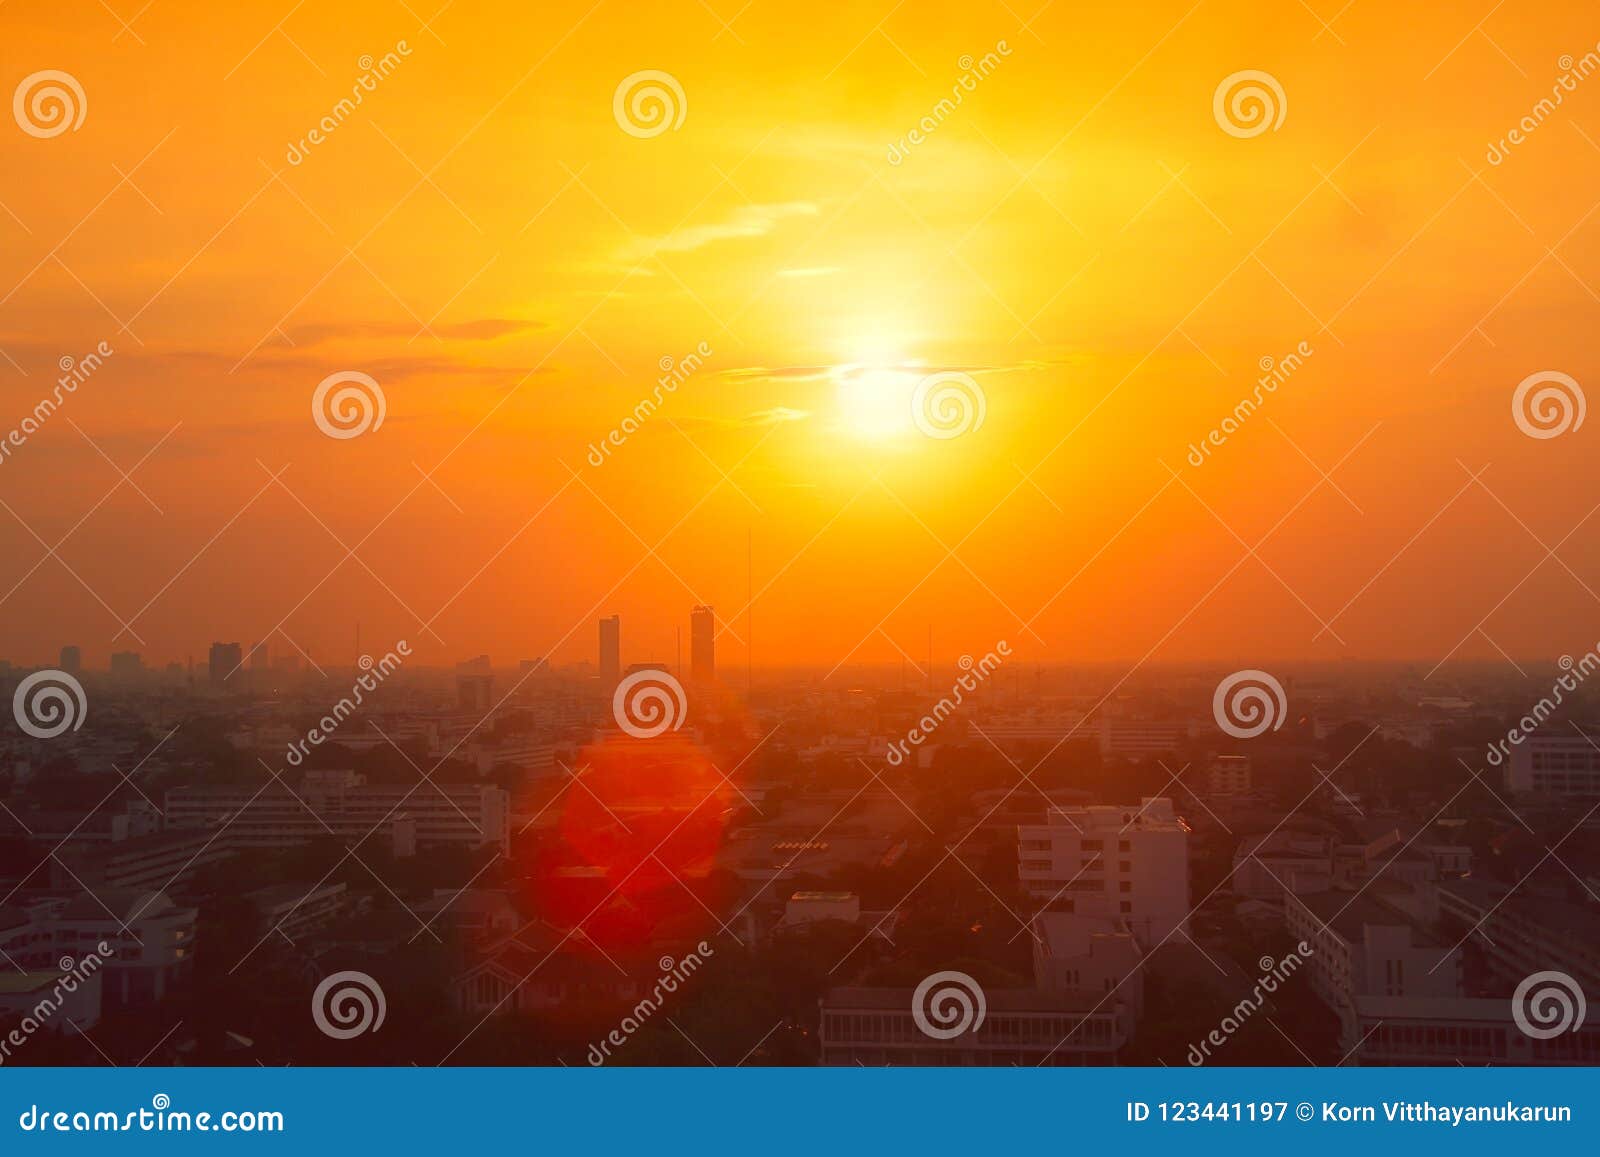 thailand city view in heatwave summer season high temperature